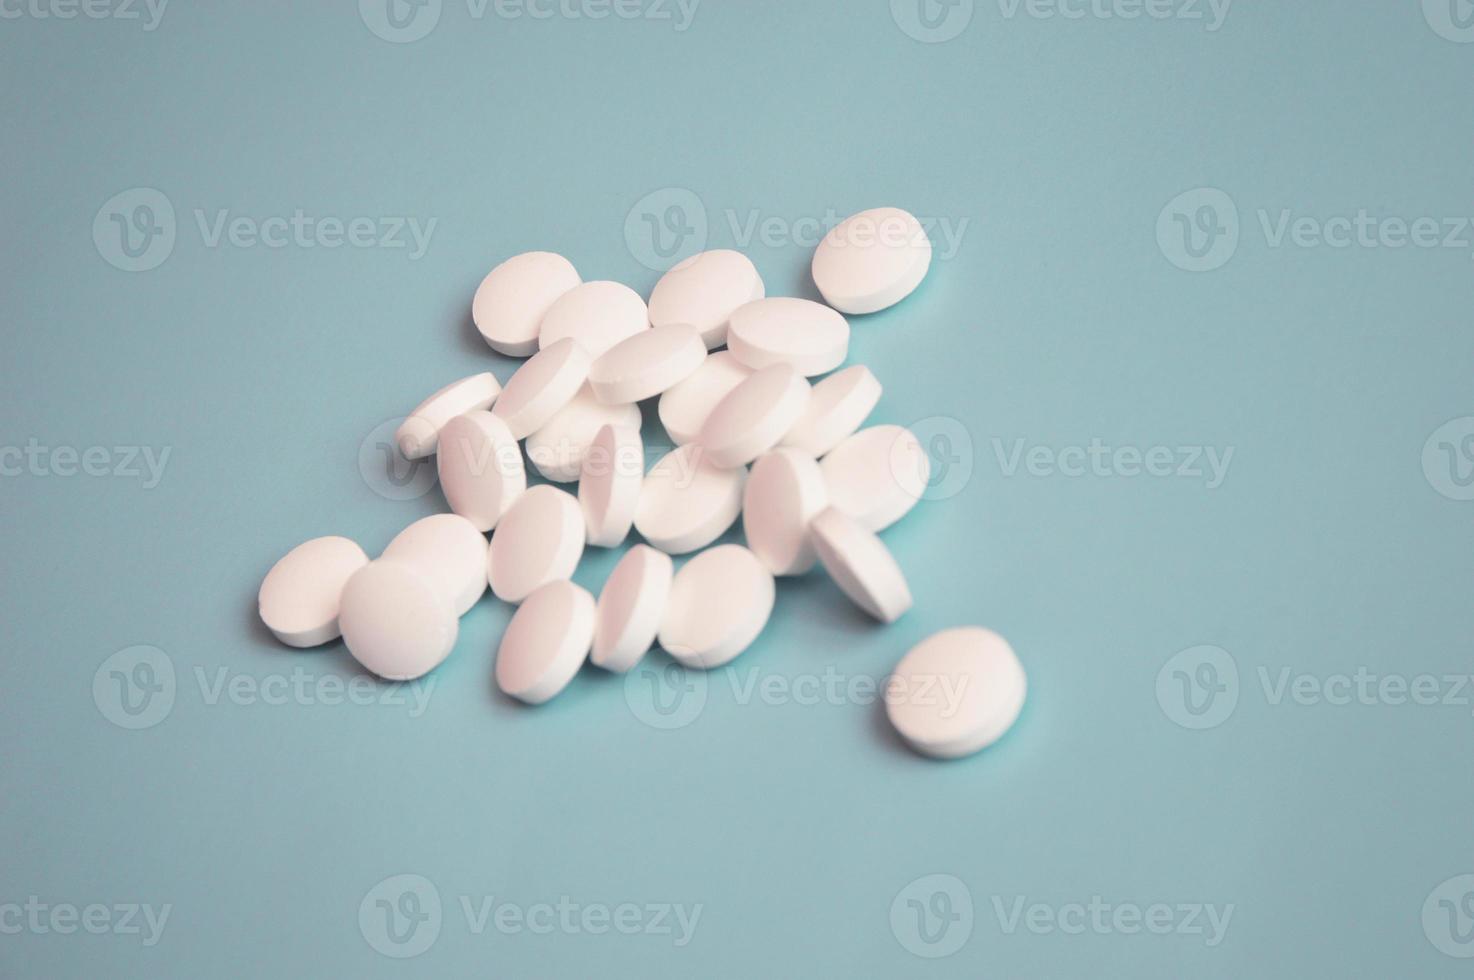 las pastillas médicas blancas sueltas yacen sobre un fondo turquesa claro. concepto de atención médica. medicamentos, bioaditivos. industria farmacéutica. foto